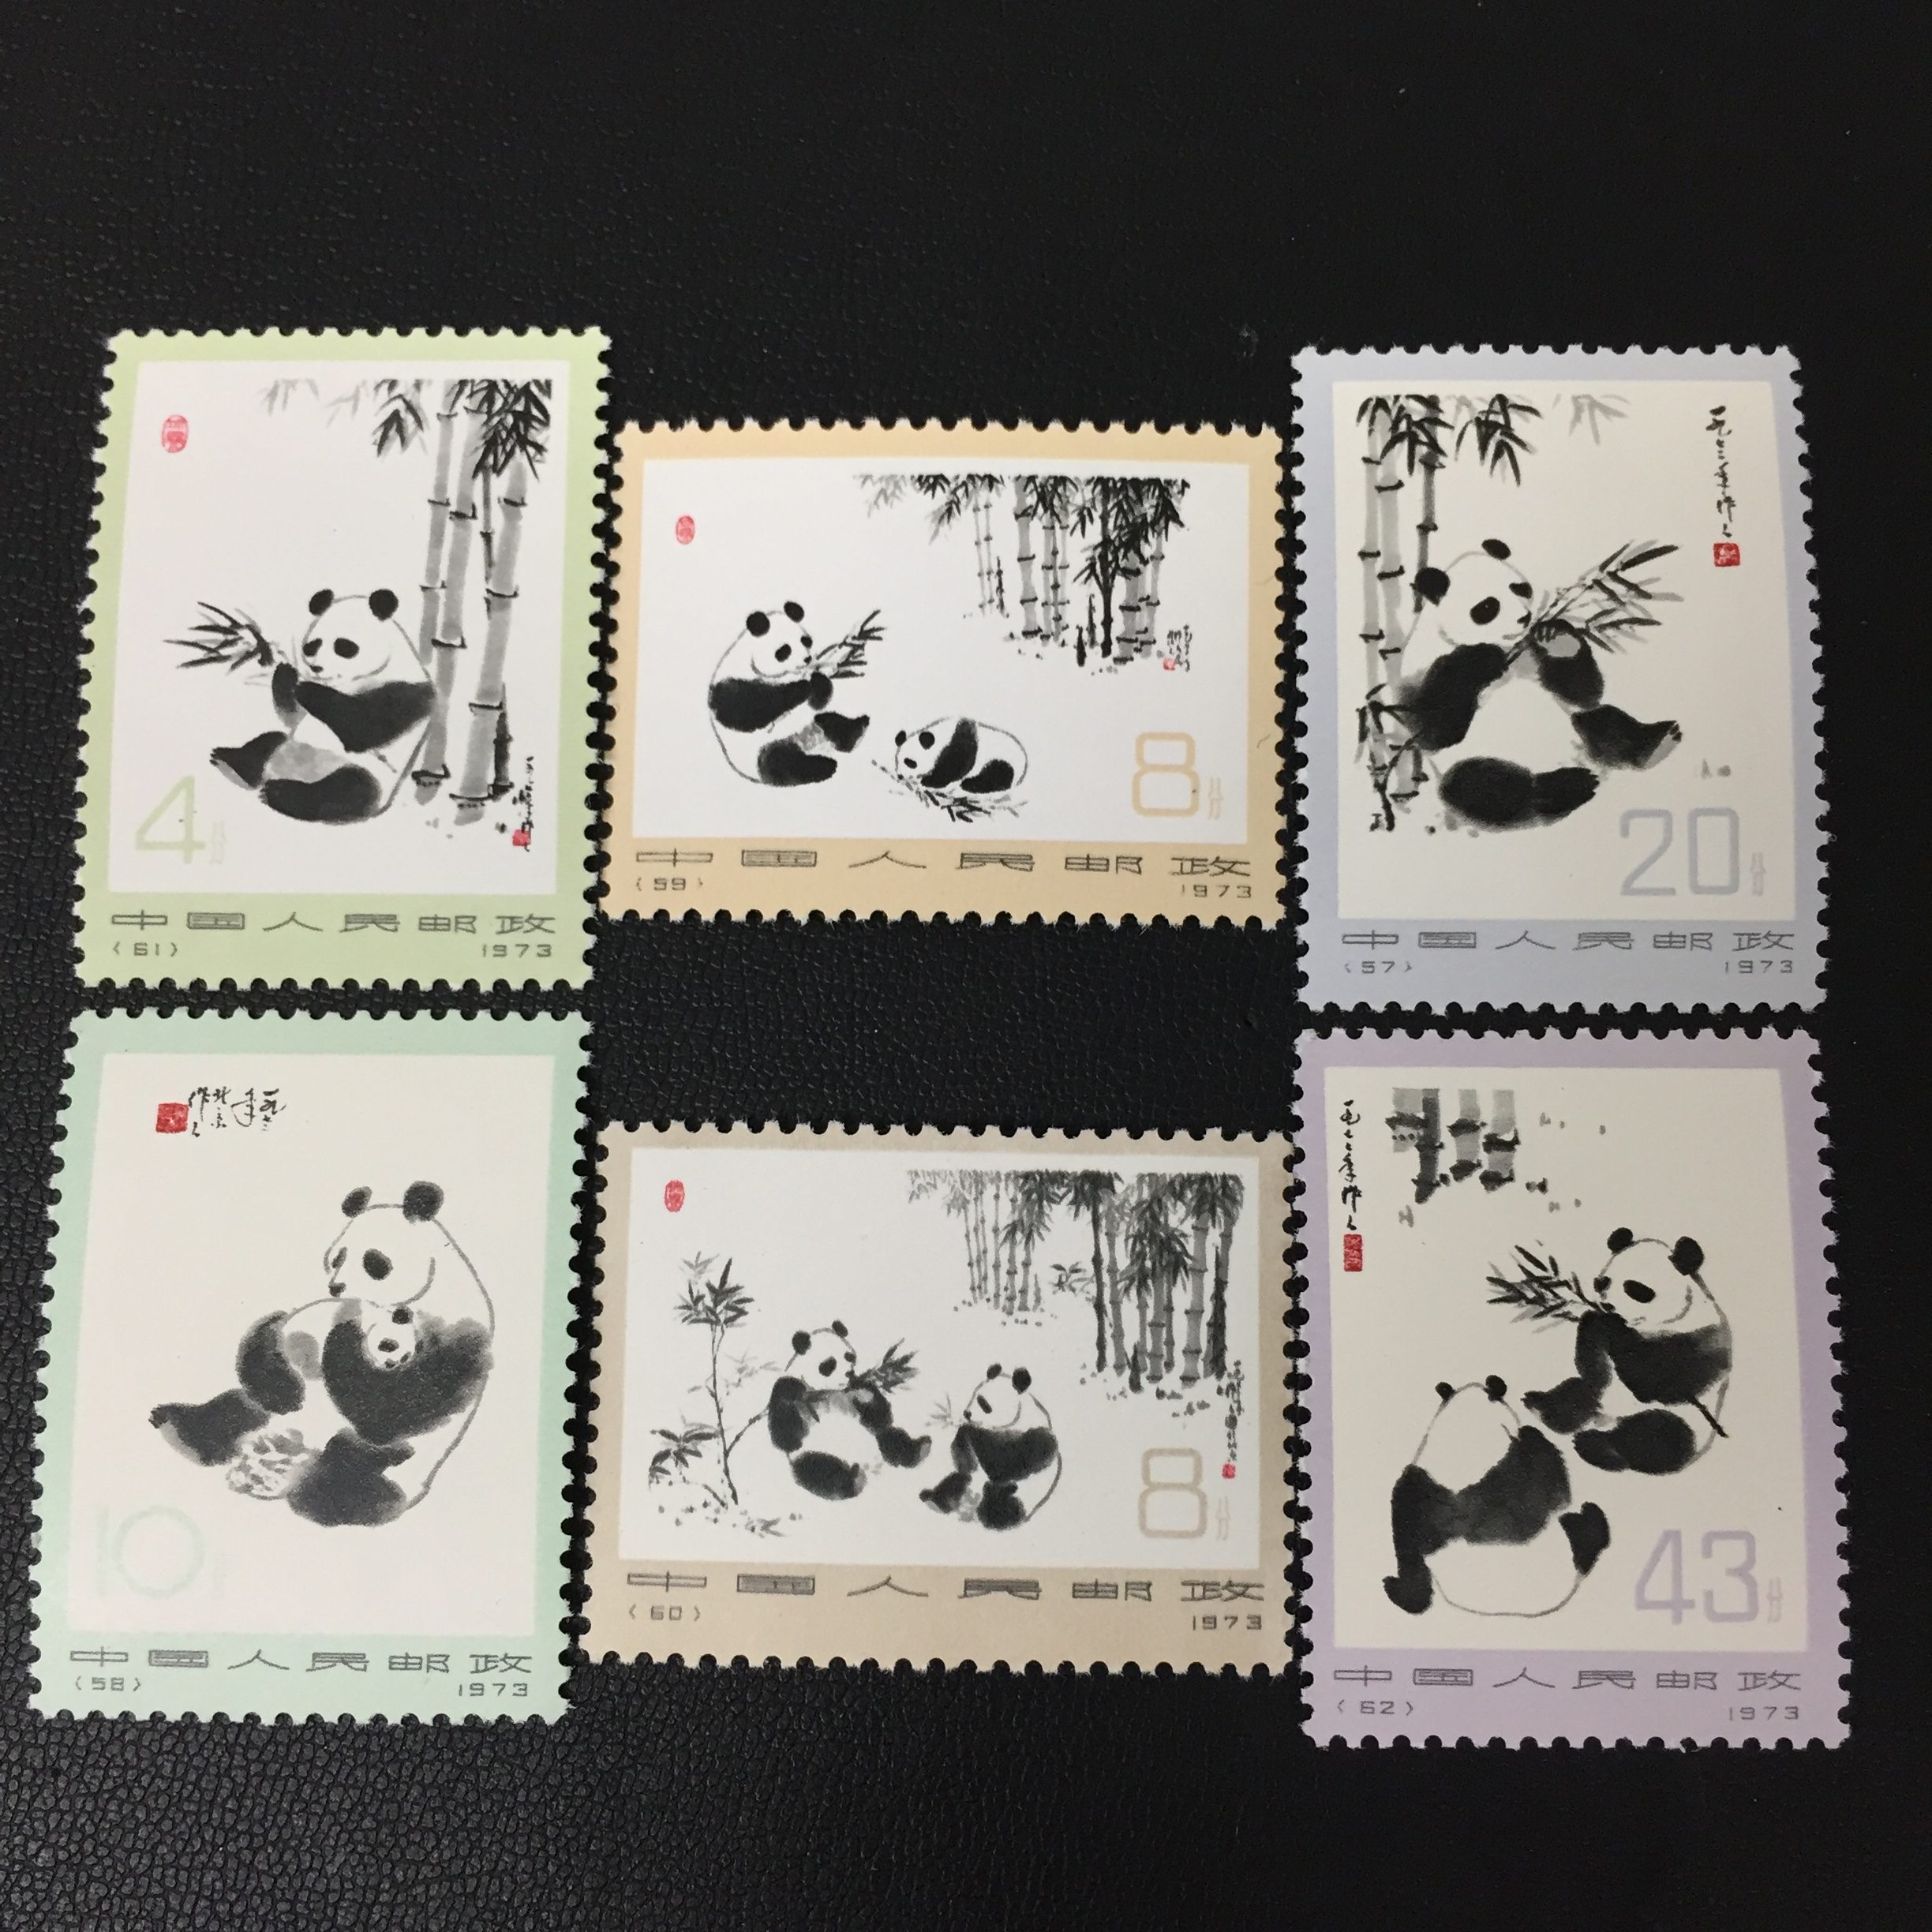 【中国切手】オオパンダ 1973年